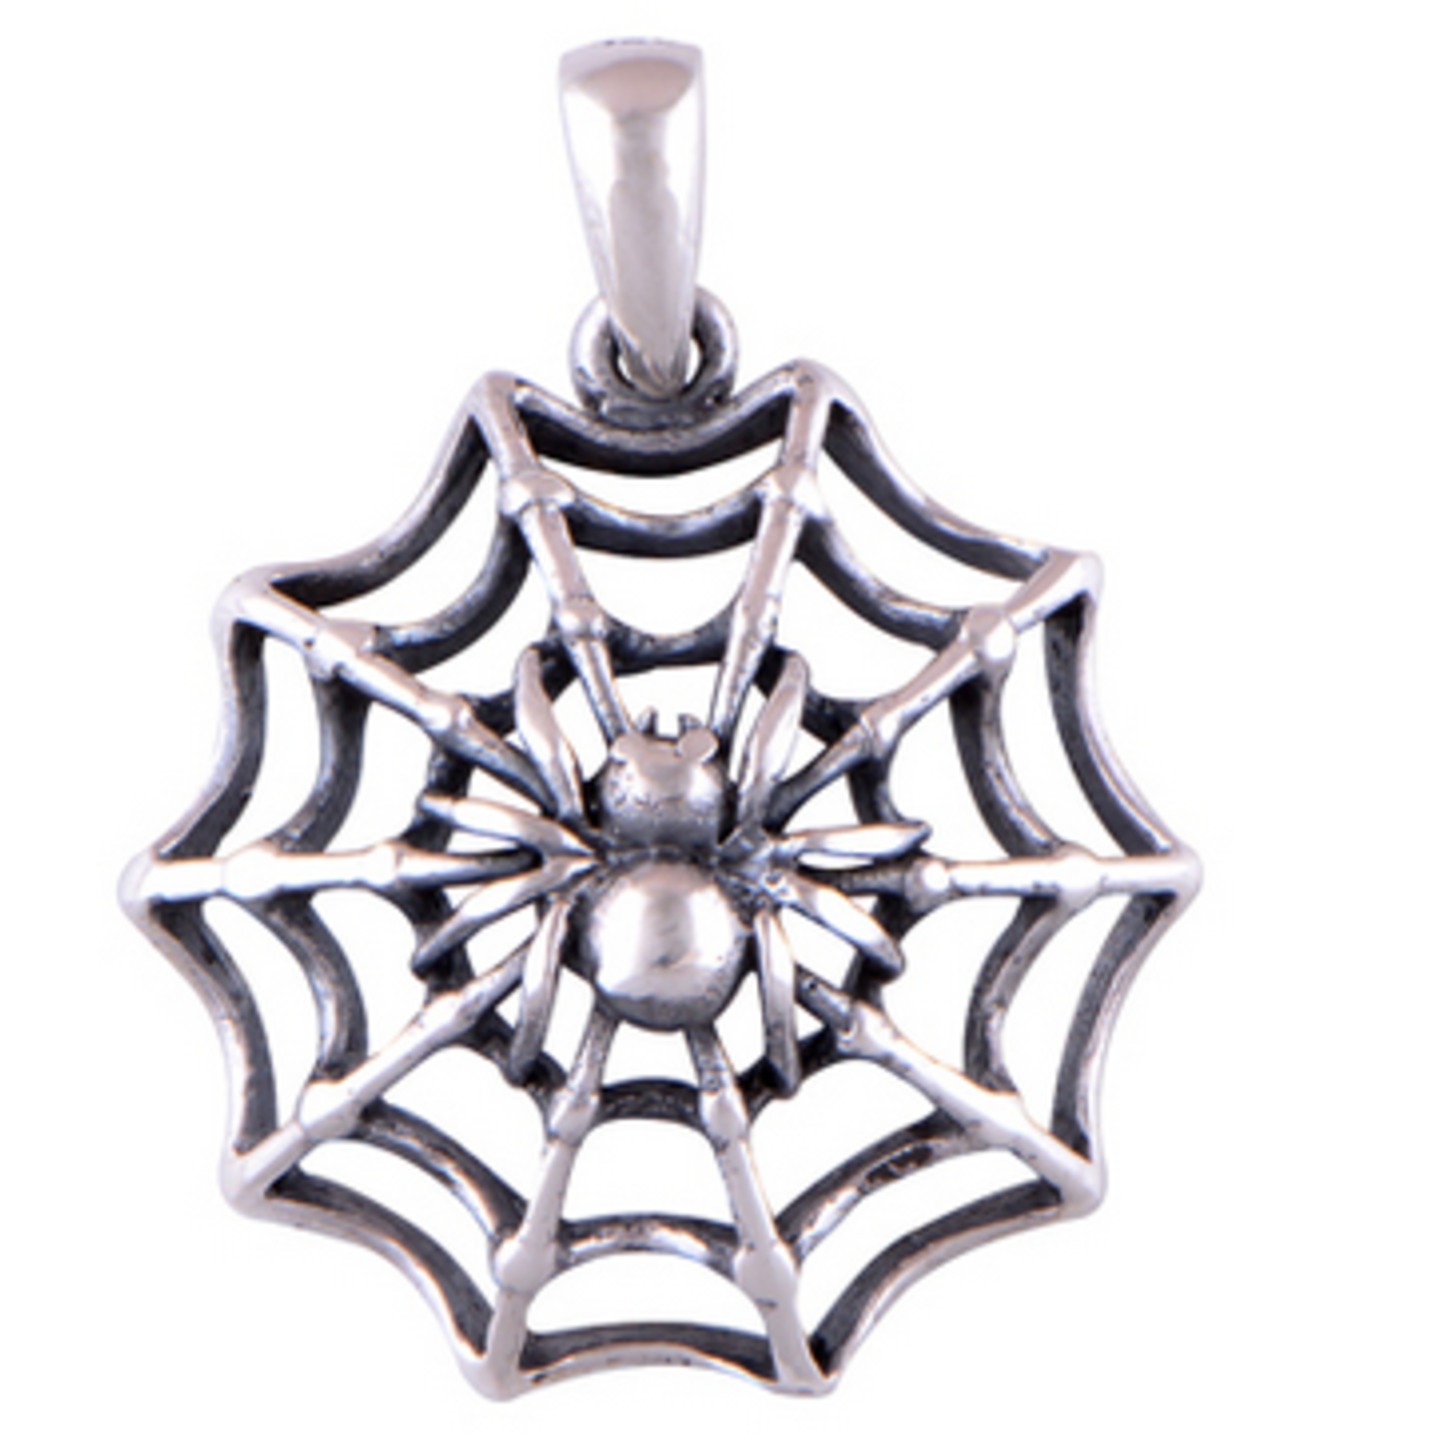 The Spider Web Silver Pendant